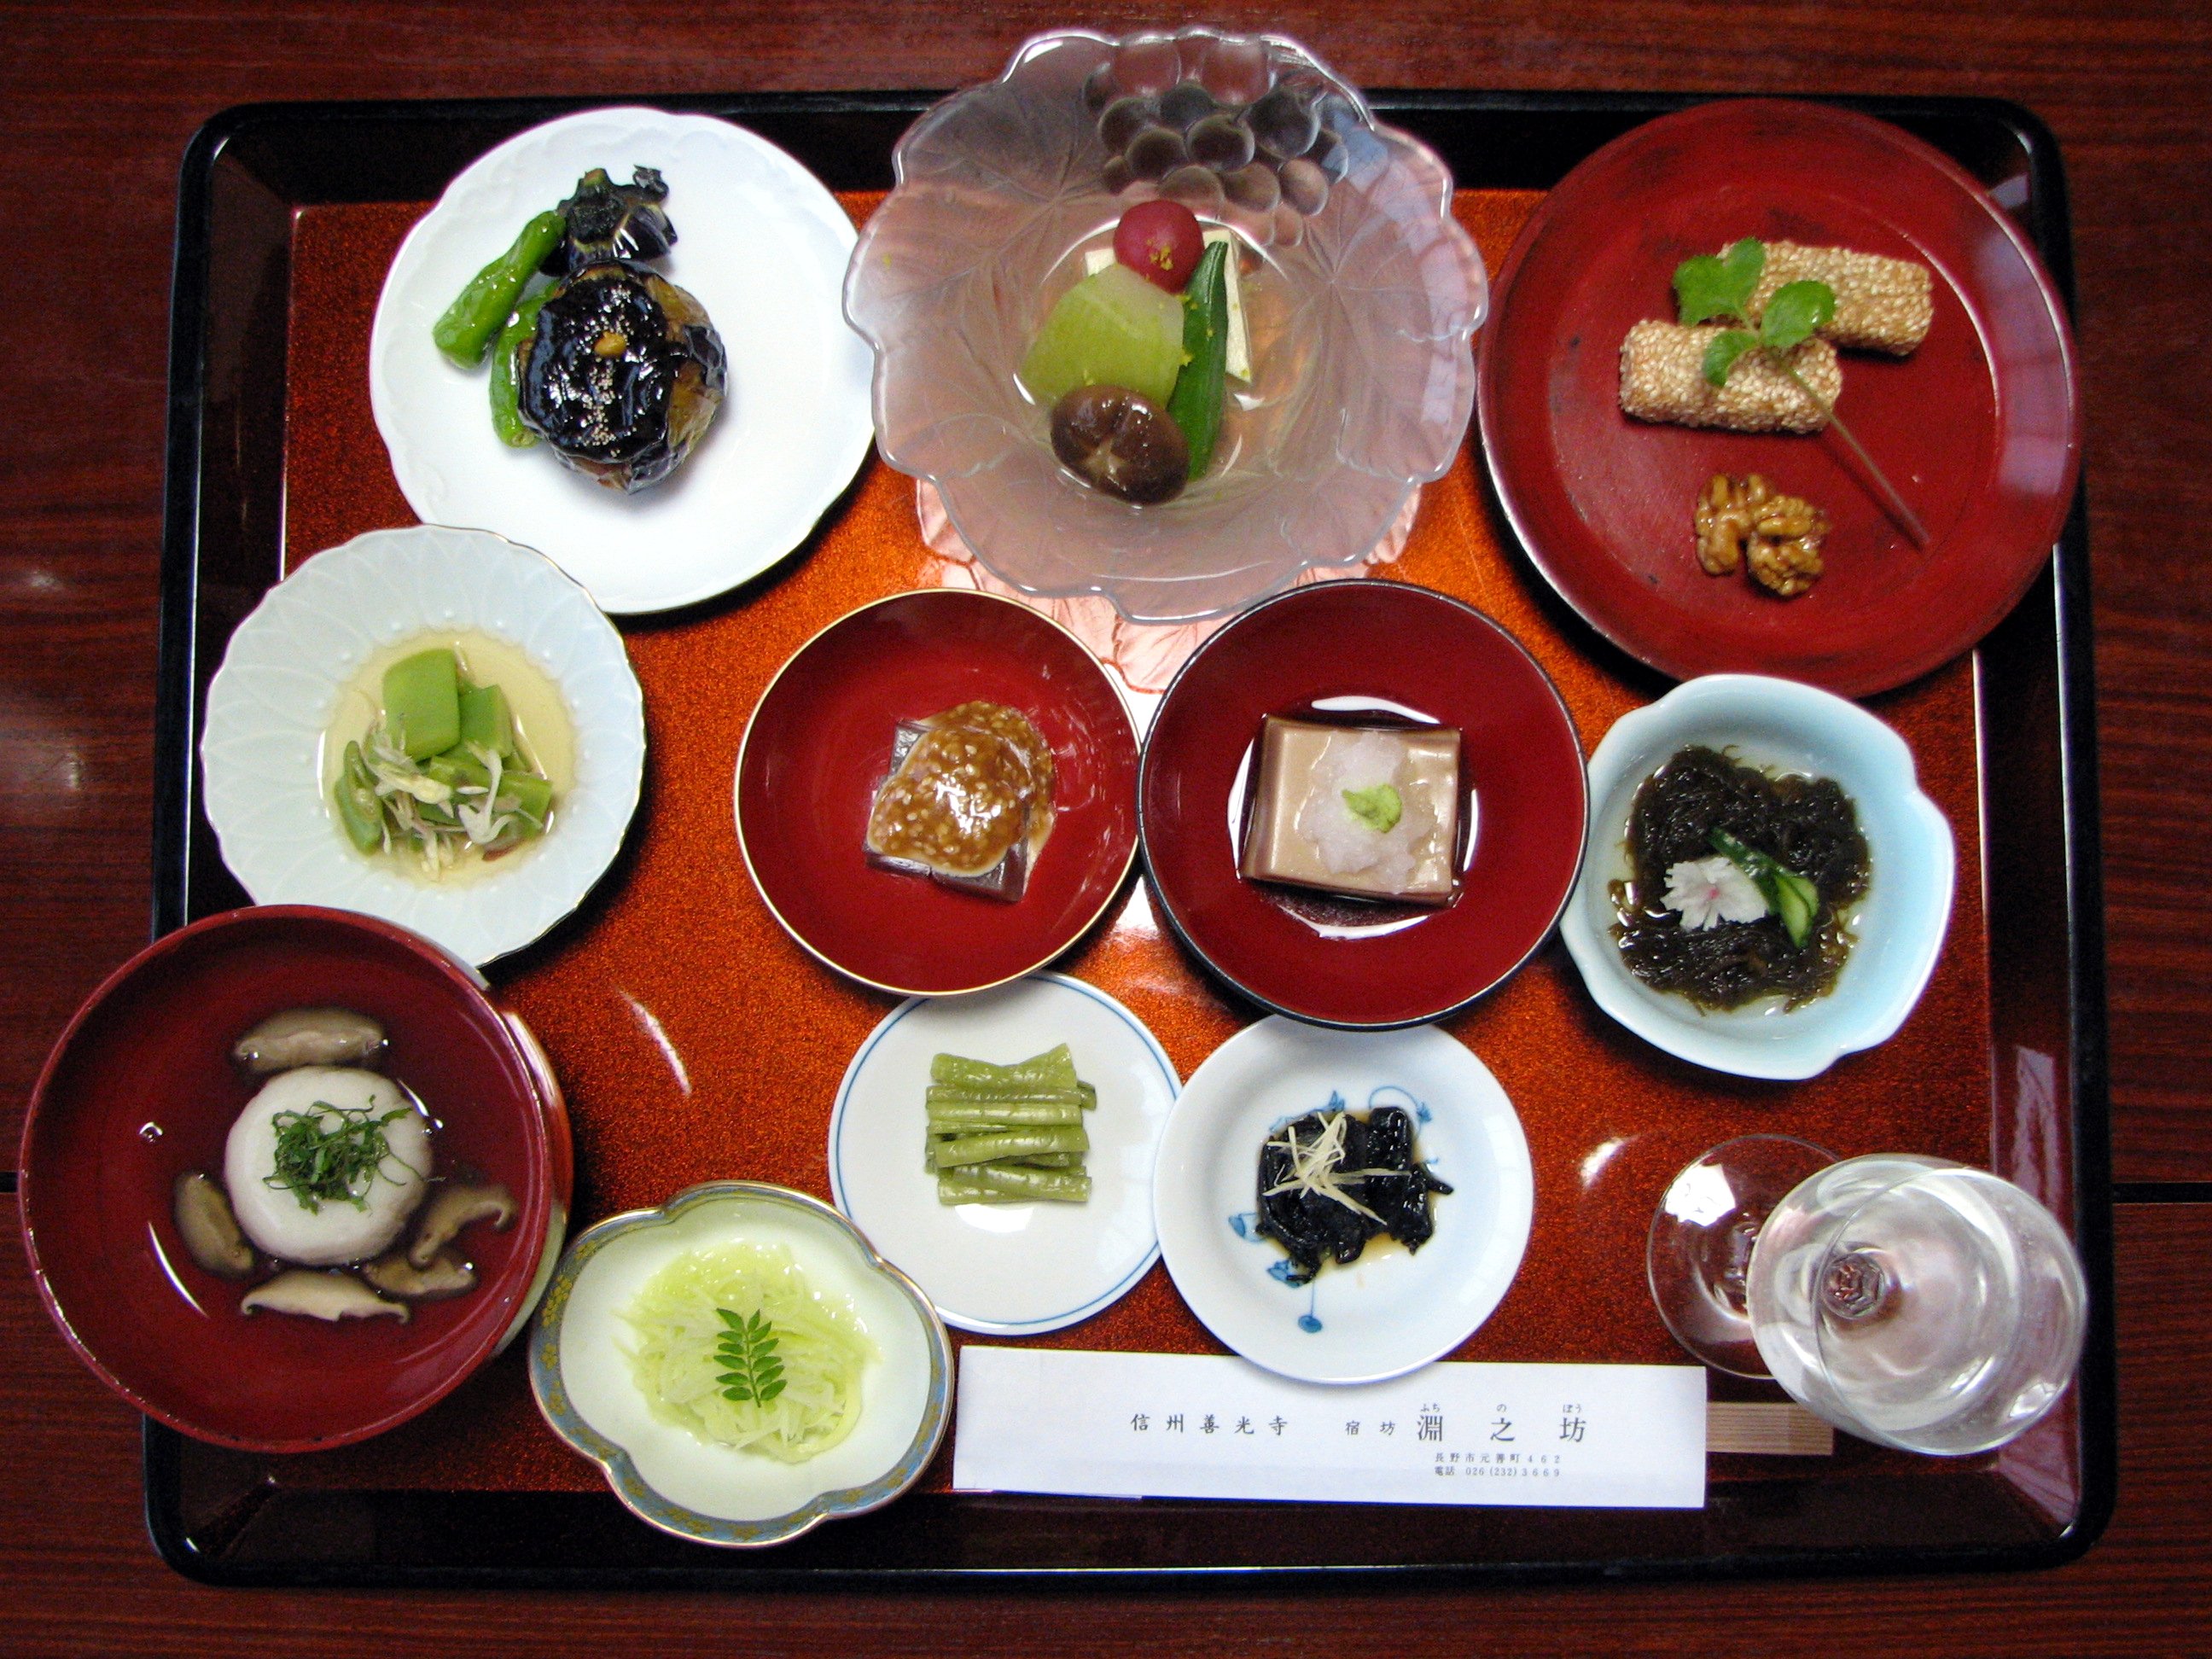 File:Japanese temple vegetarian dinner.jpg - Wikimedia Commons